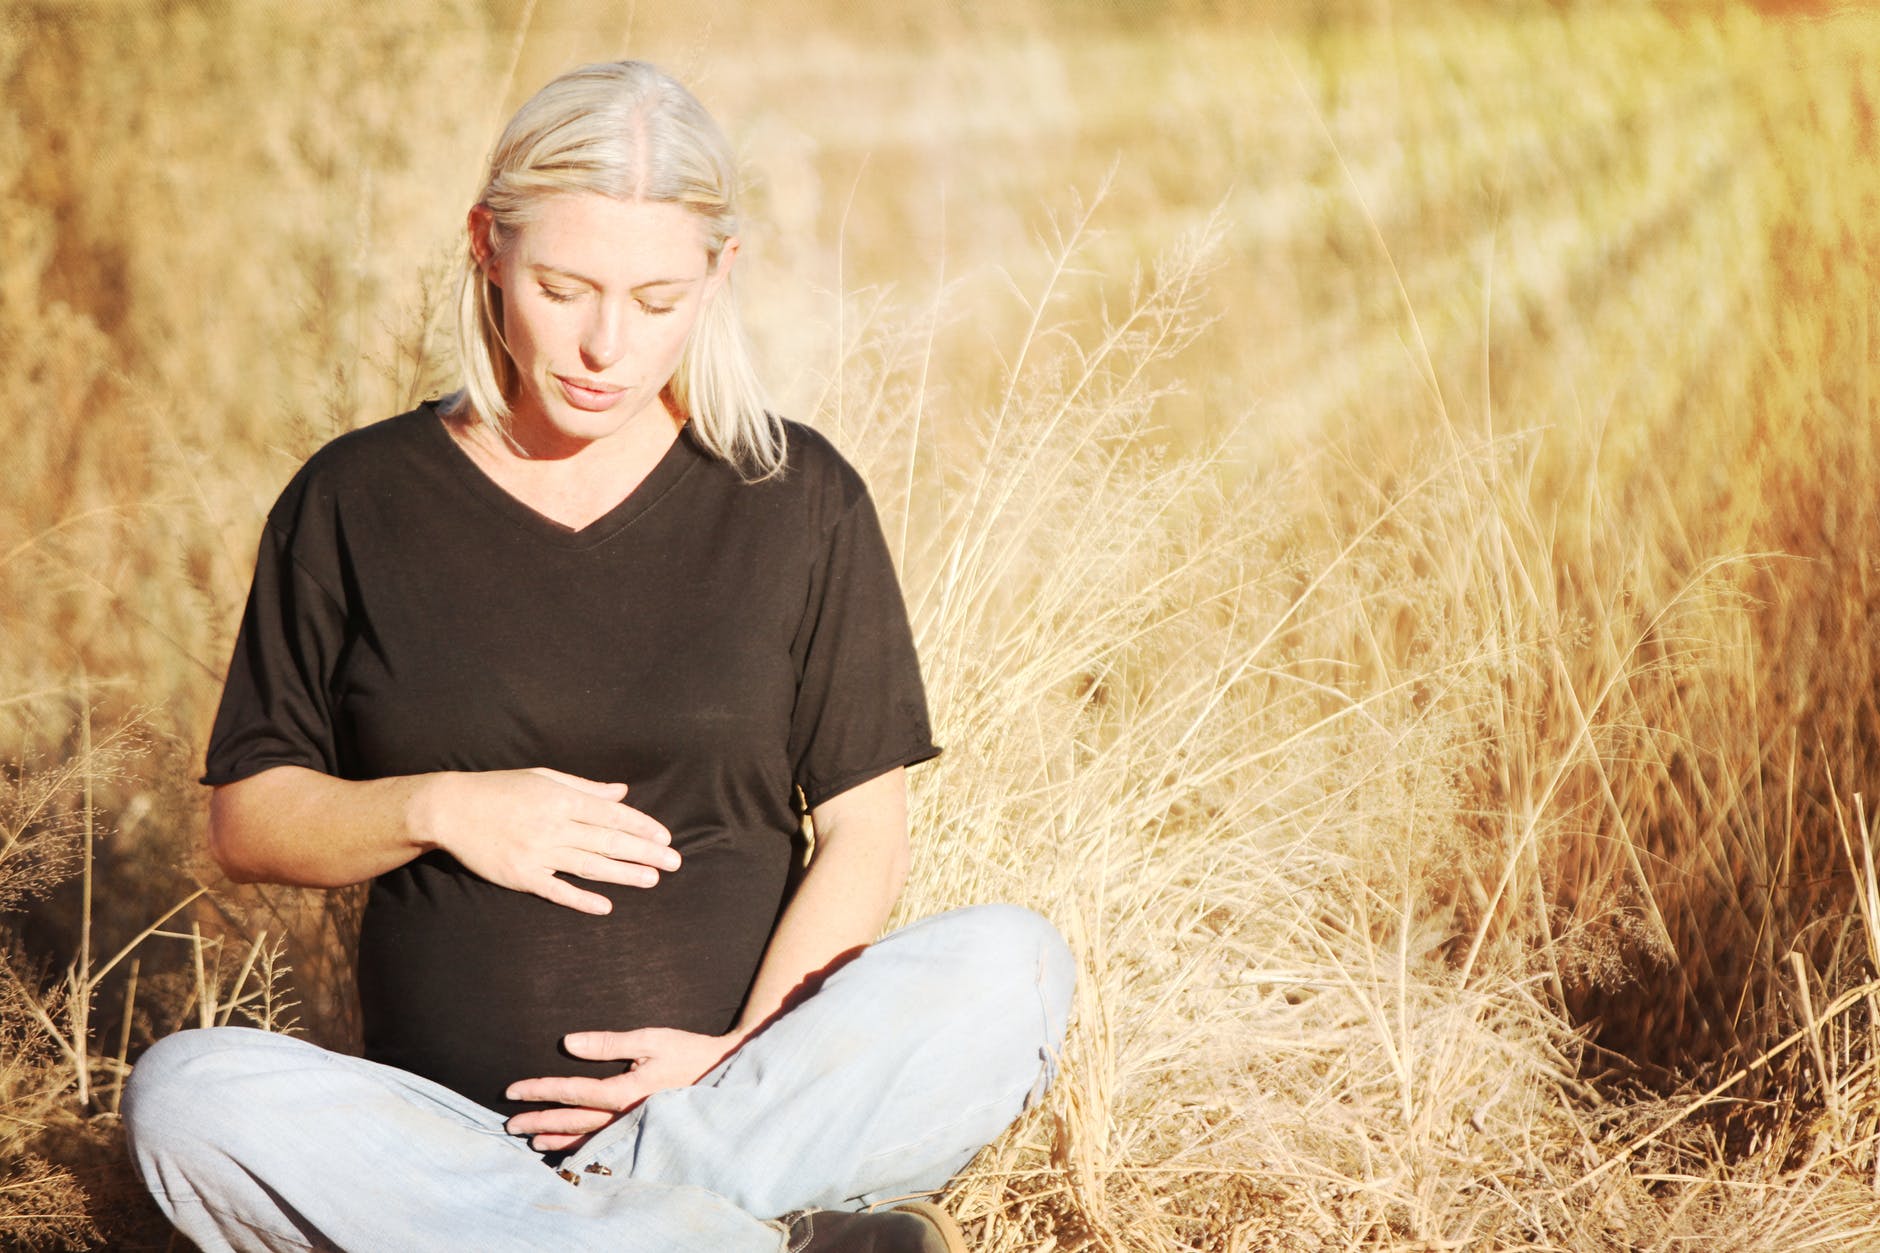 Είσαι έγκυος; Ιδού 4+1 τρόποι για να μειώσεις το άγχος σου!